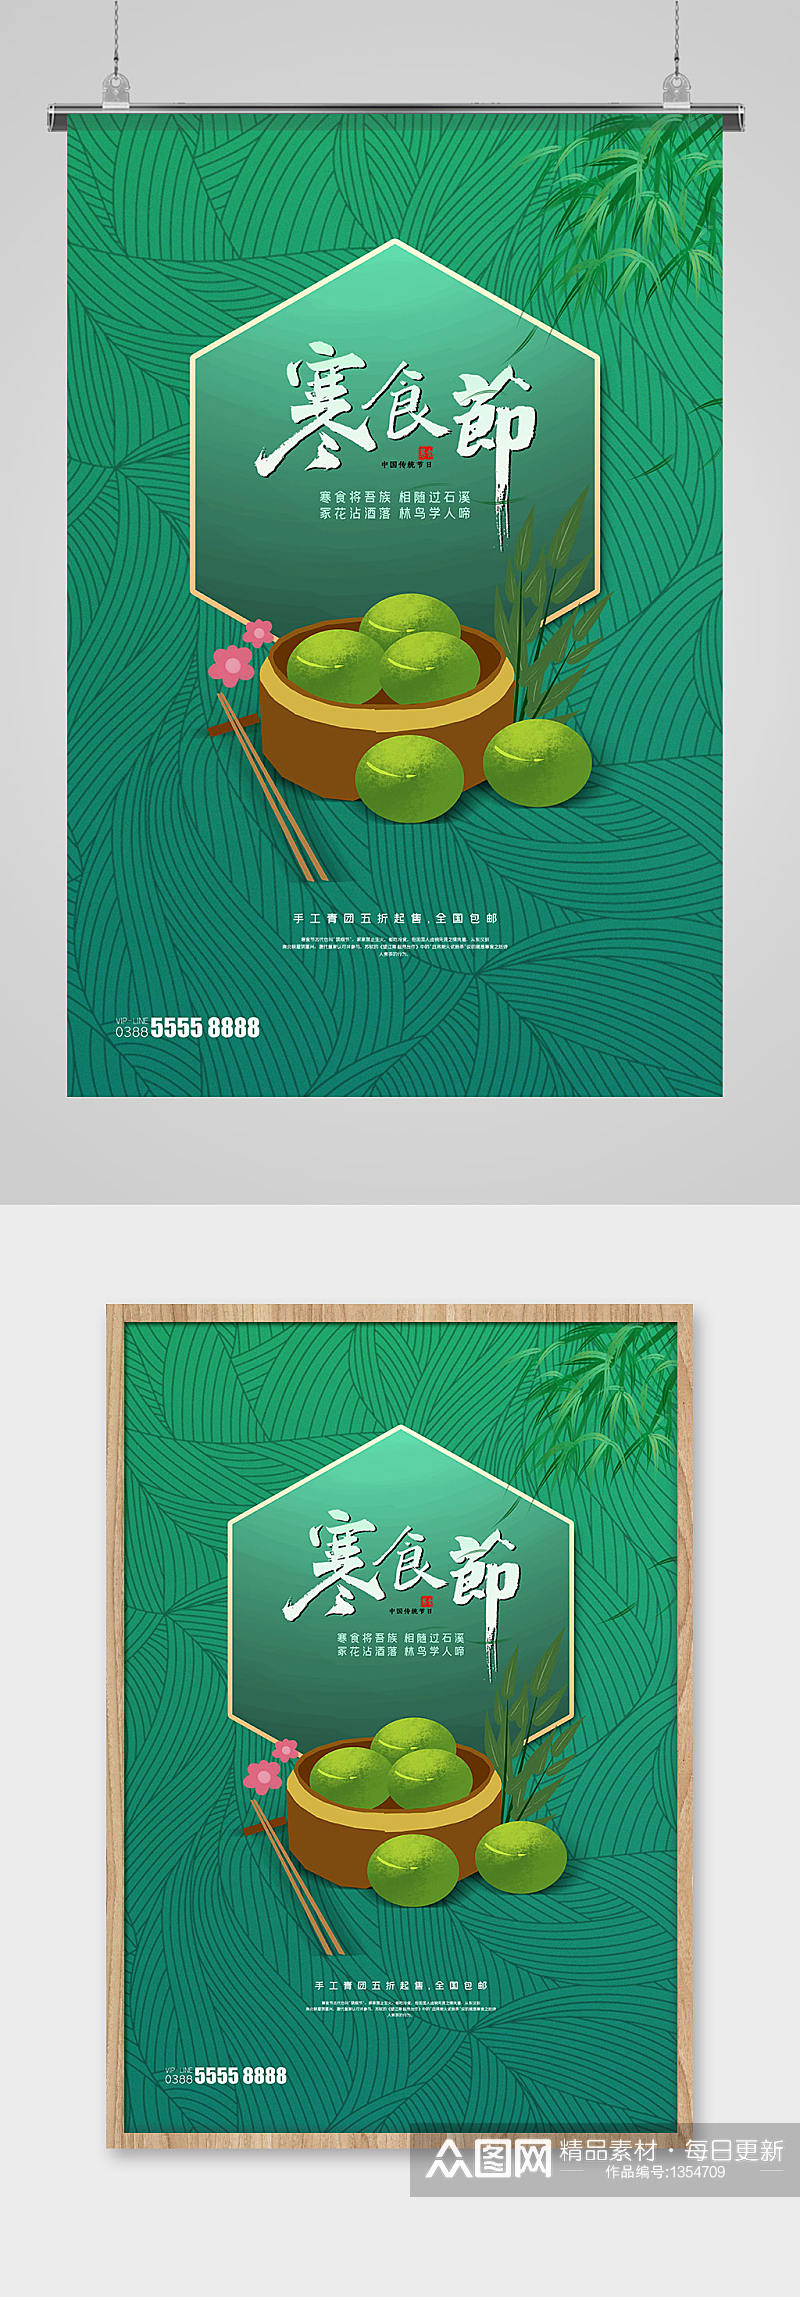 寒食节青团绿色创意海报素材